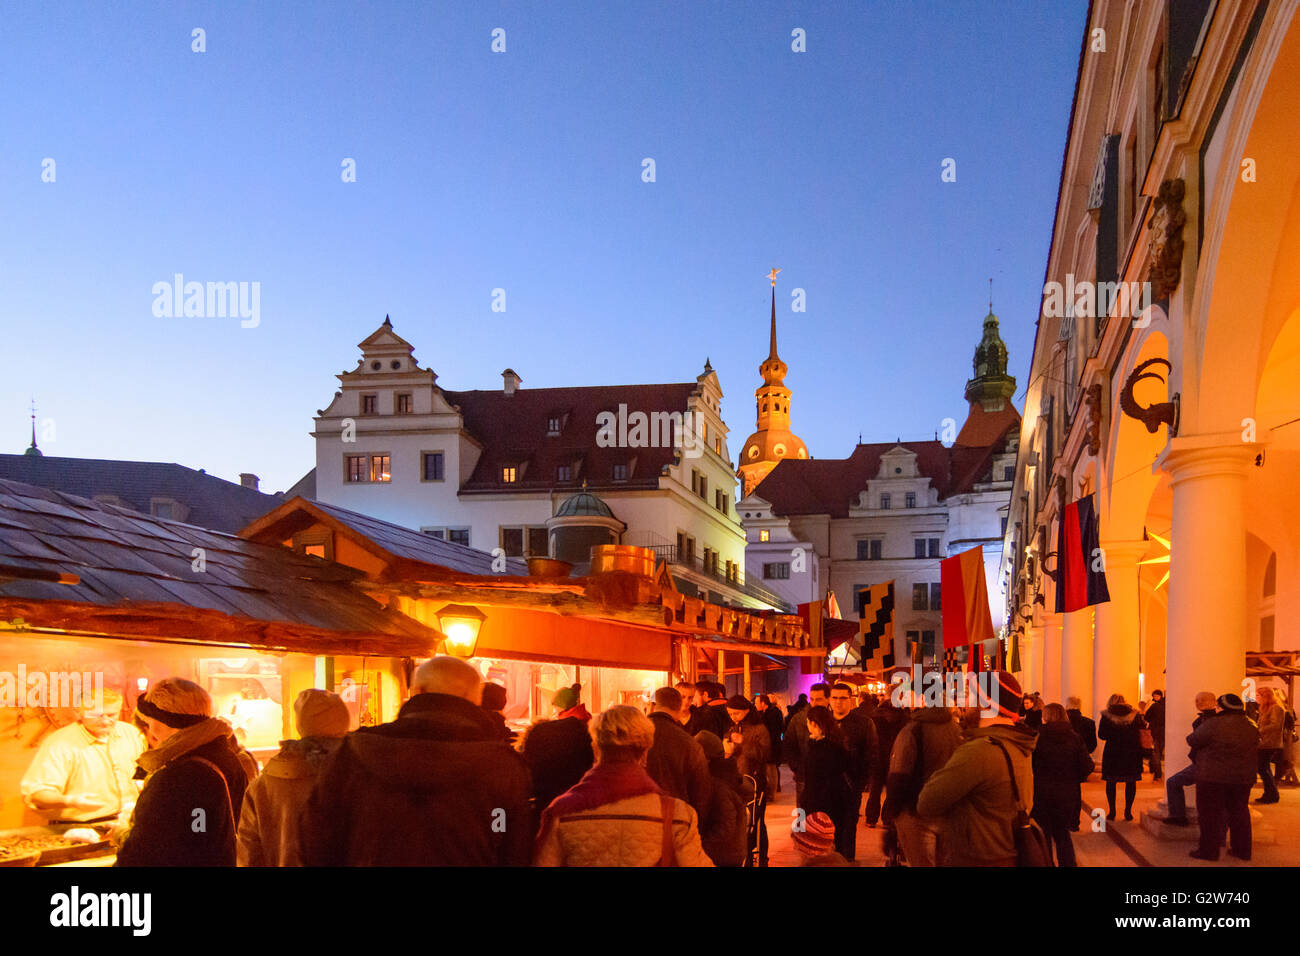 Marché de Noël médiéval de Stallhof (stable) cour du château avec vue sur le château et Hausmannsturm, Allemagne, Dresden Banque D'Images